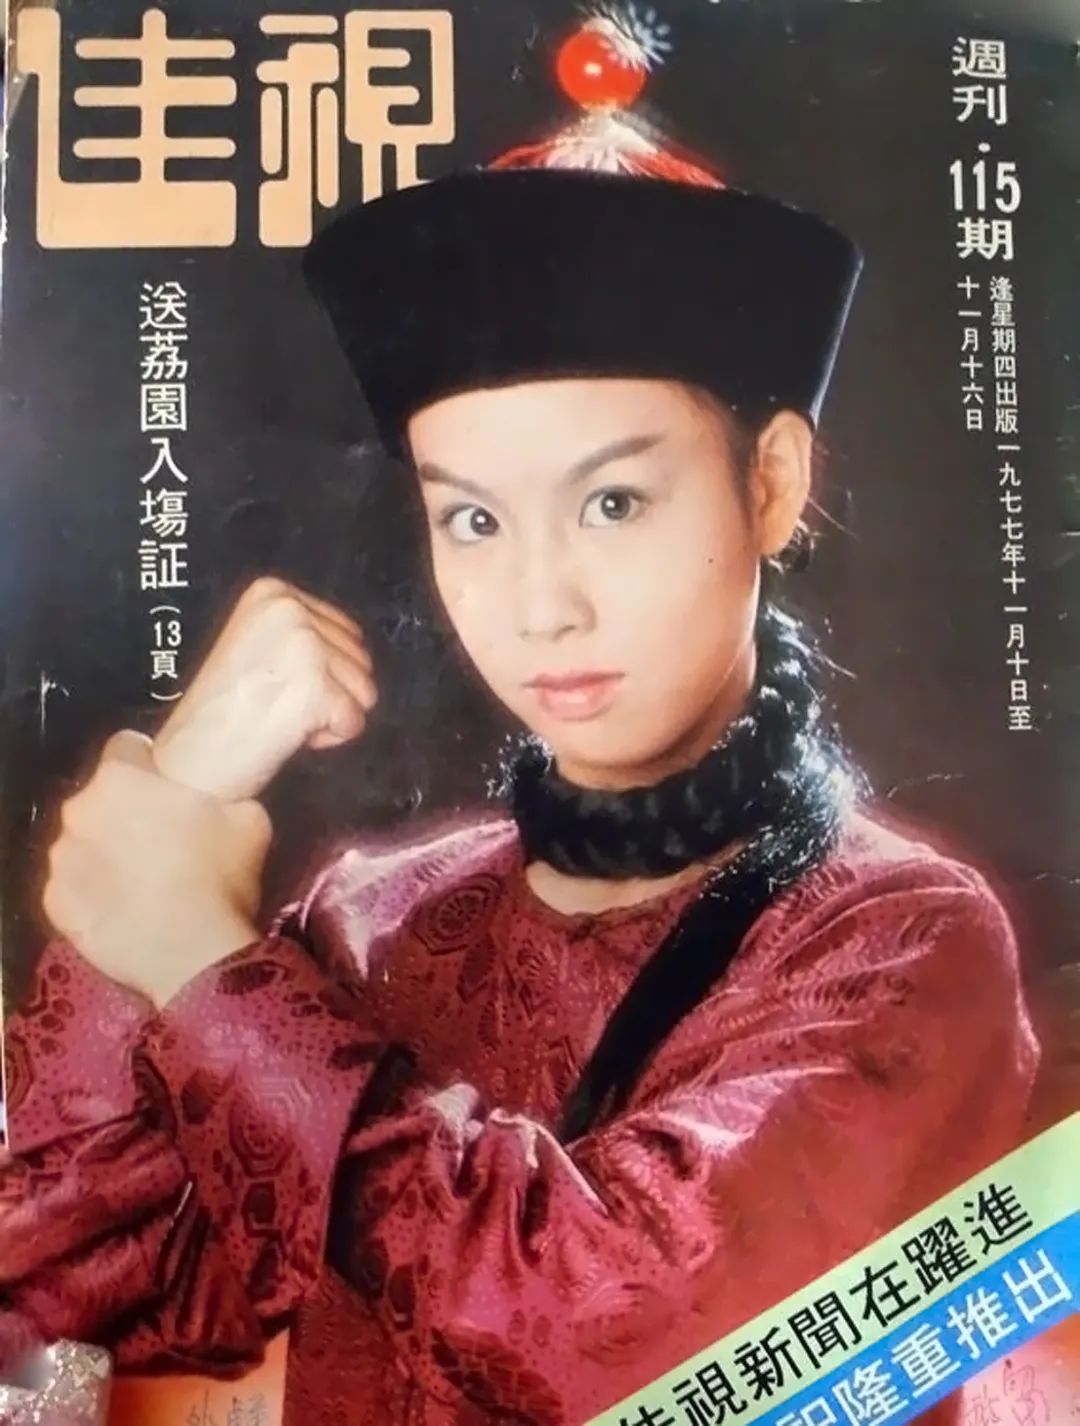 Vi Tieu Bao，唯一的女性版本故事：視覺壓倒7個妻子，U70仍然非常年輕-照片3。